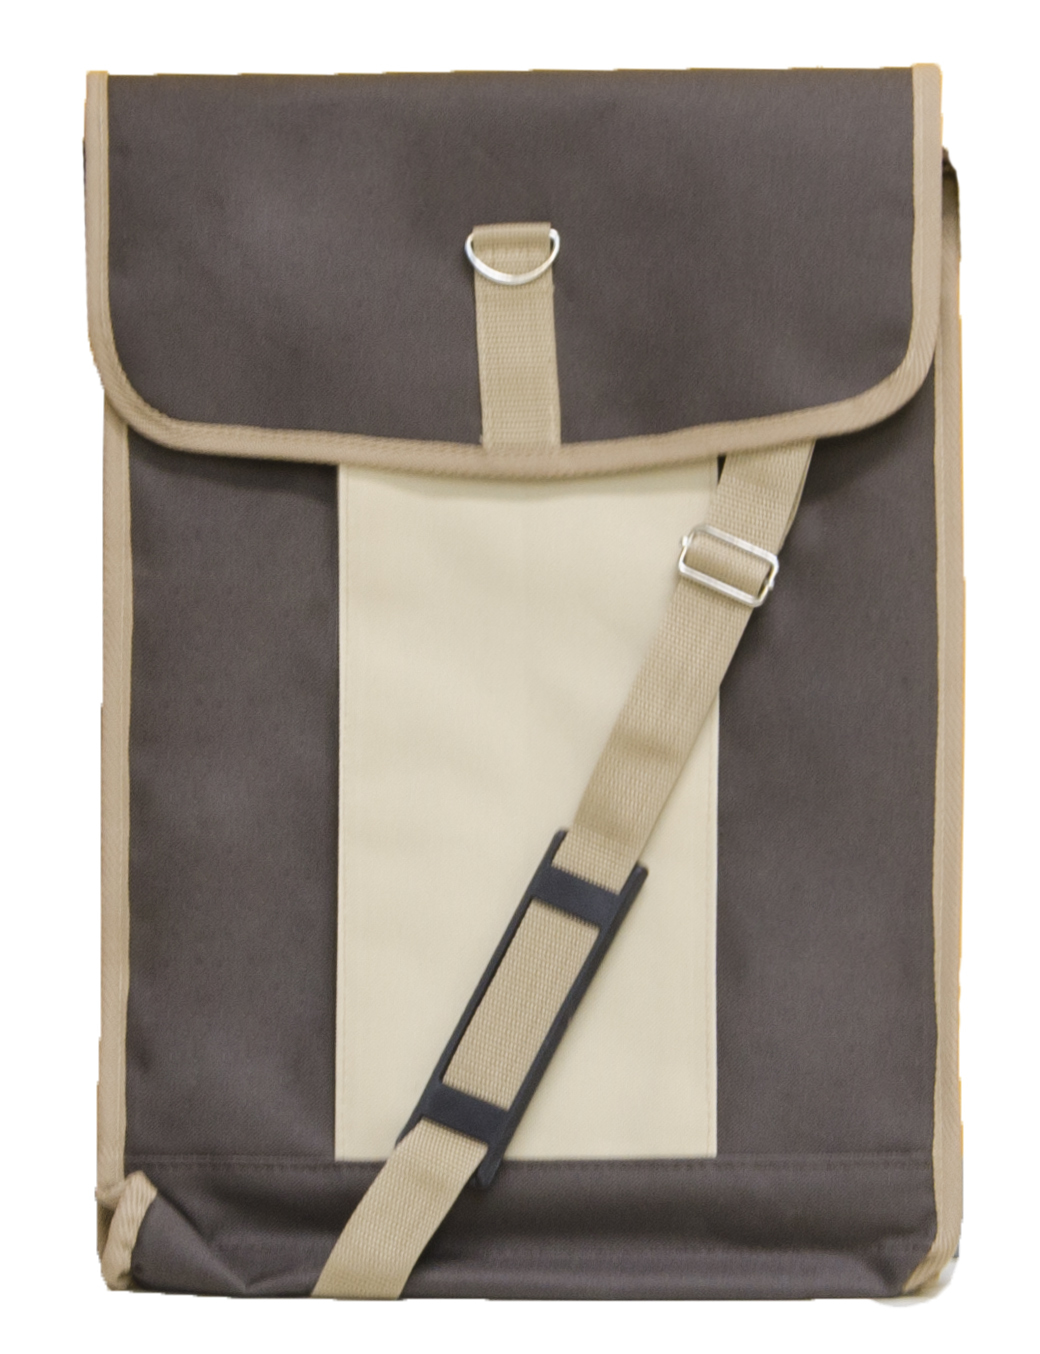 Сумка для планшета 42х30 (жест.) коричневая с бежевым карманом сумка c ручками nobo nbag n1140 c020